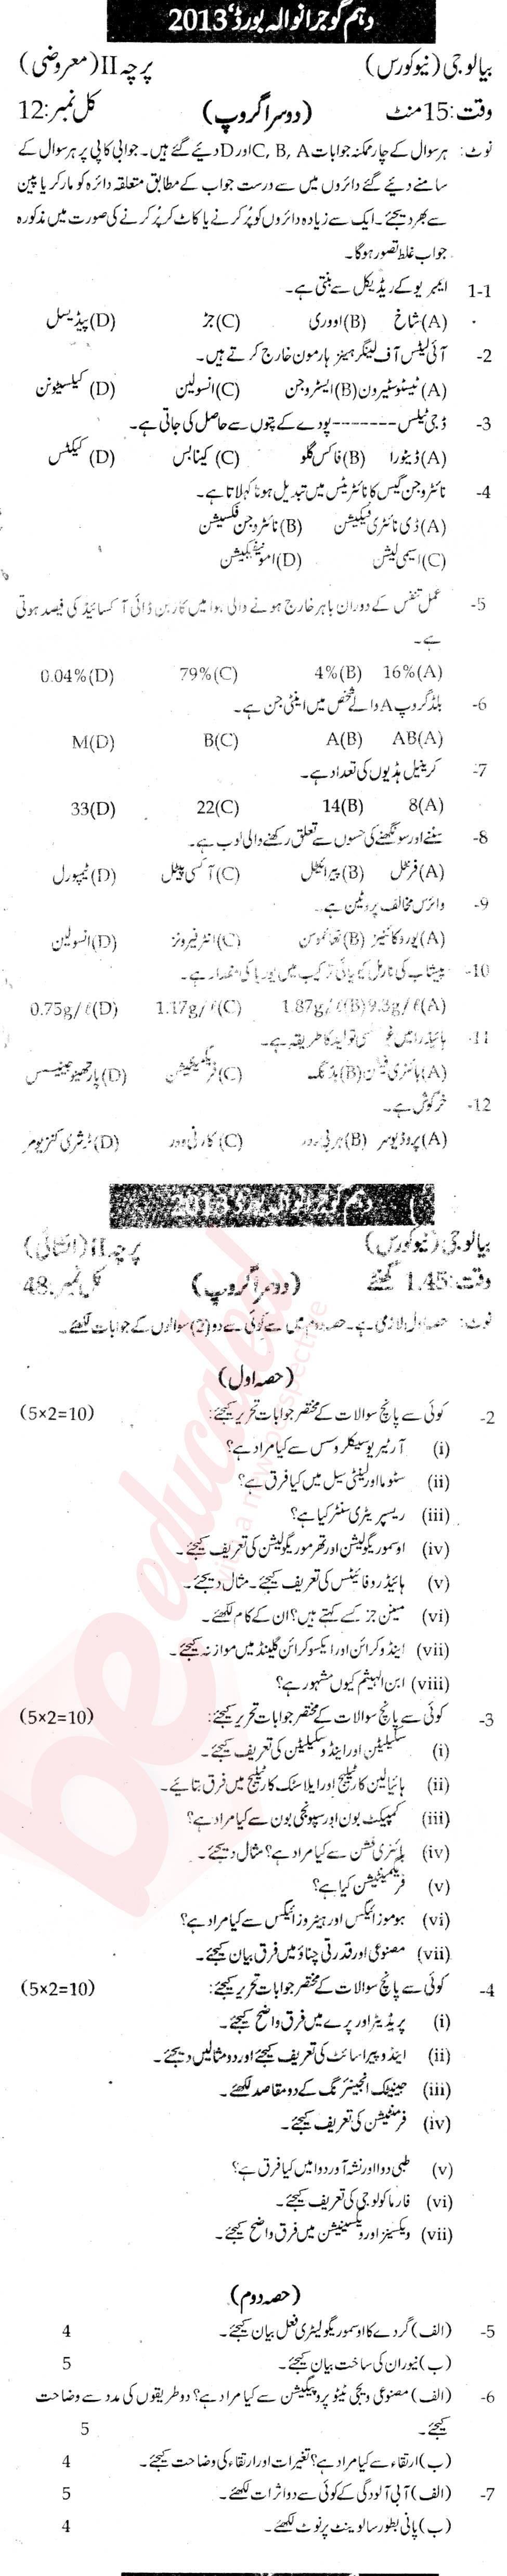 Biology 10th Urdu Medium Past Paper Group 2 BISE Gujranwala 2013